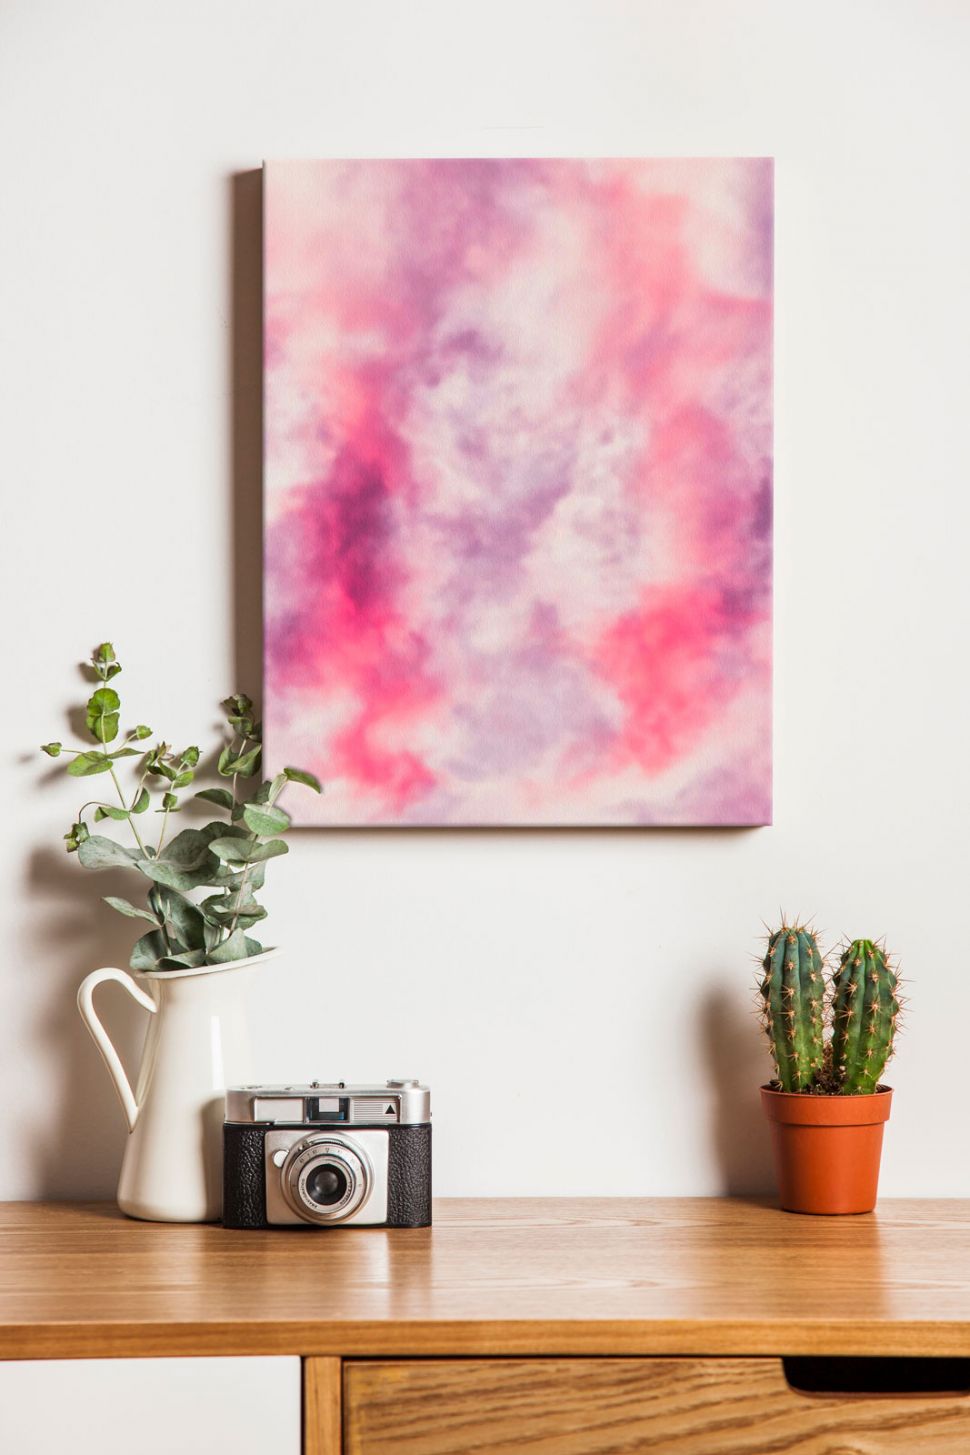 Obraz na płótnie przedstawiający różową abstrakcję powieszony w pokoju na ścianie nad biurkiem z kwiatami